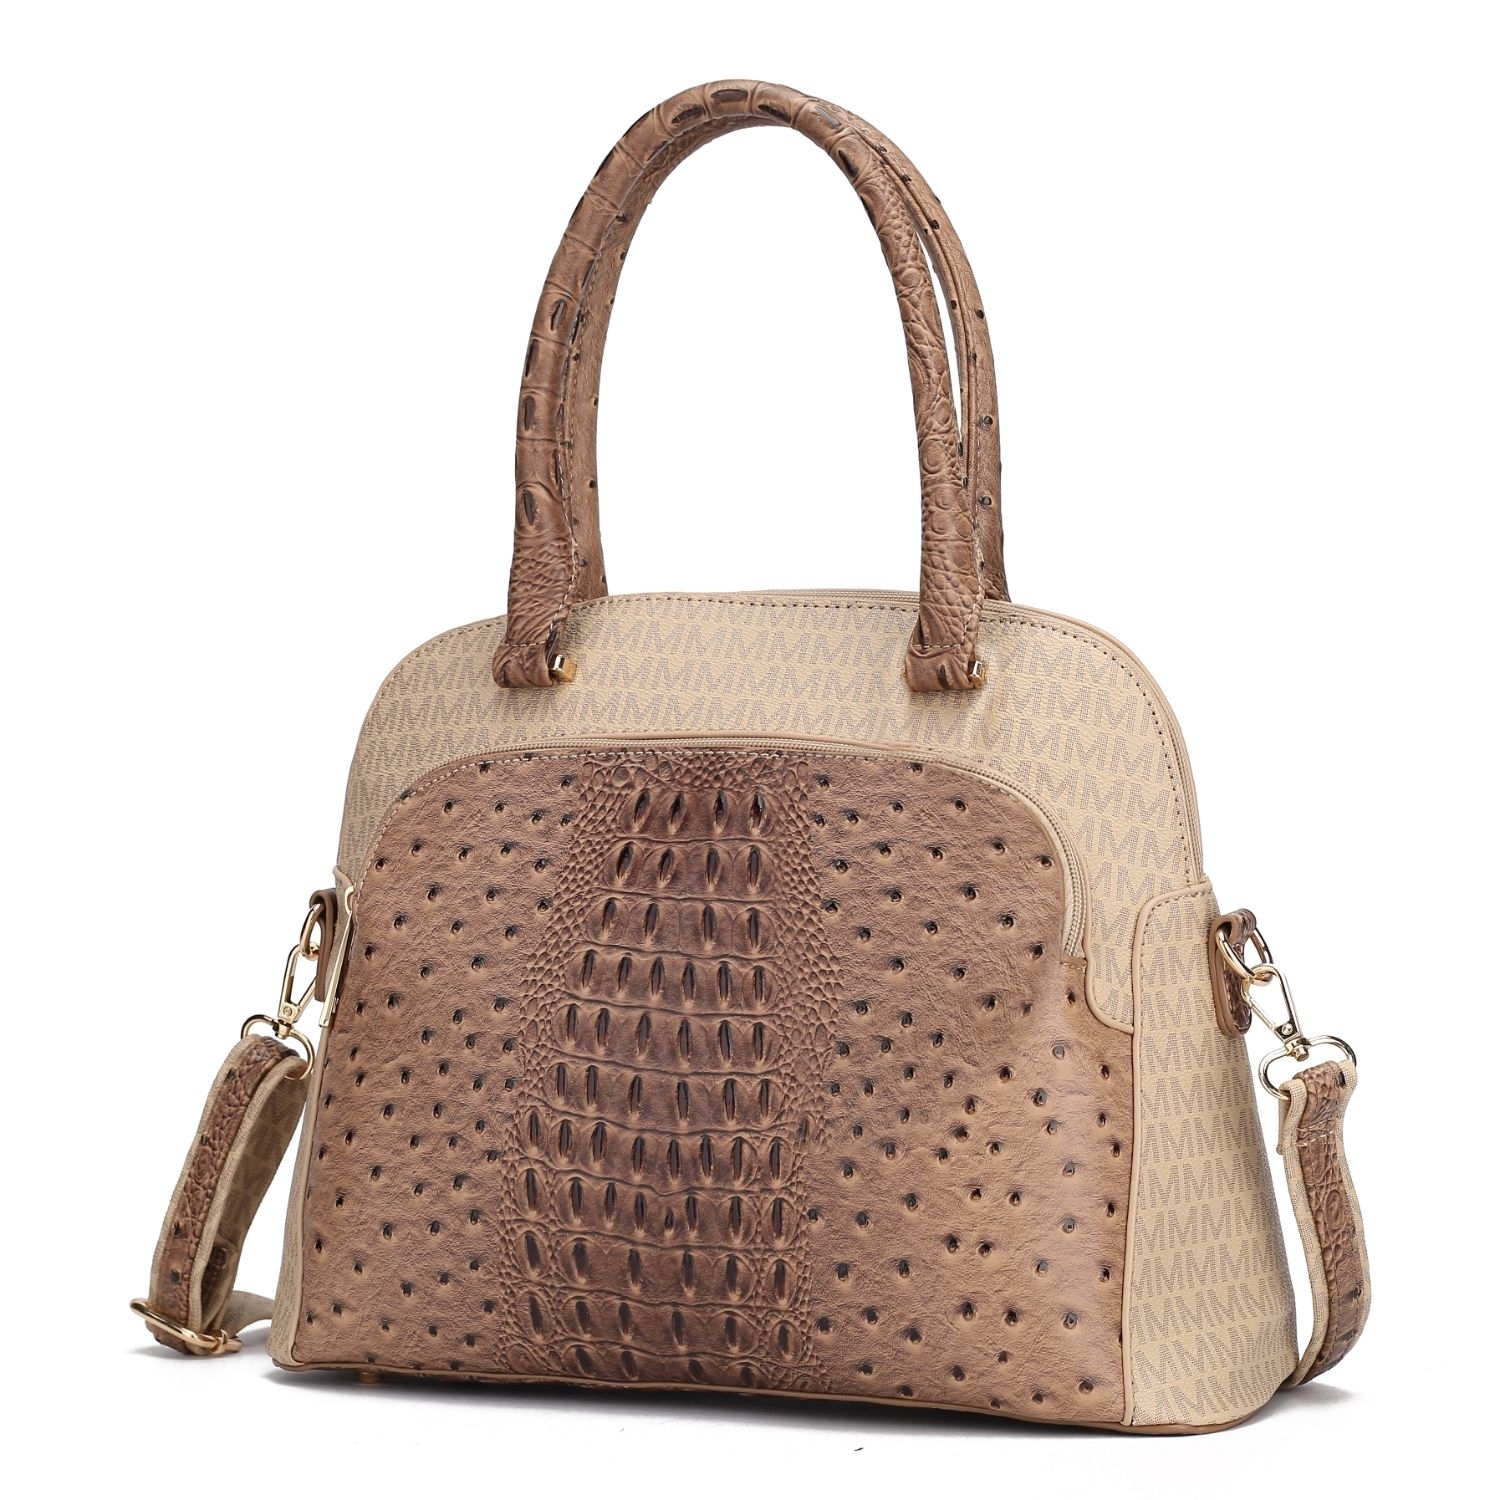 MKF Collection Fiona Tote Handbag By Mia K. - Navy